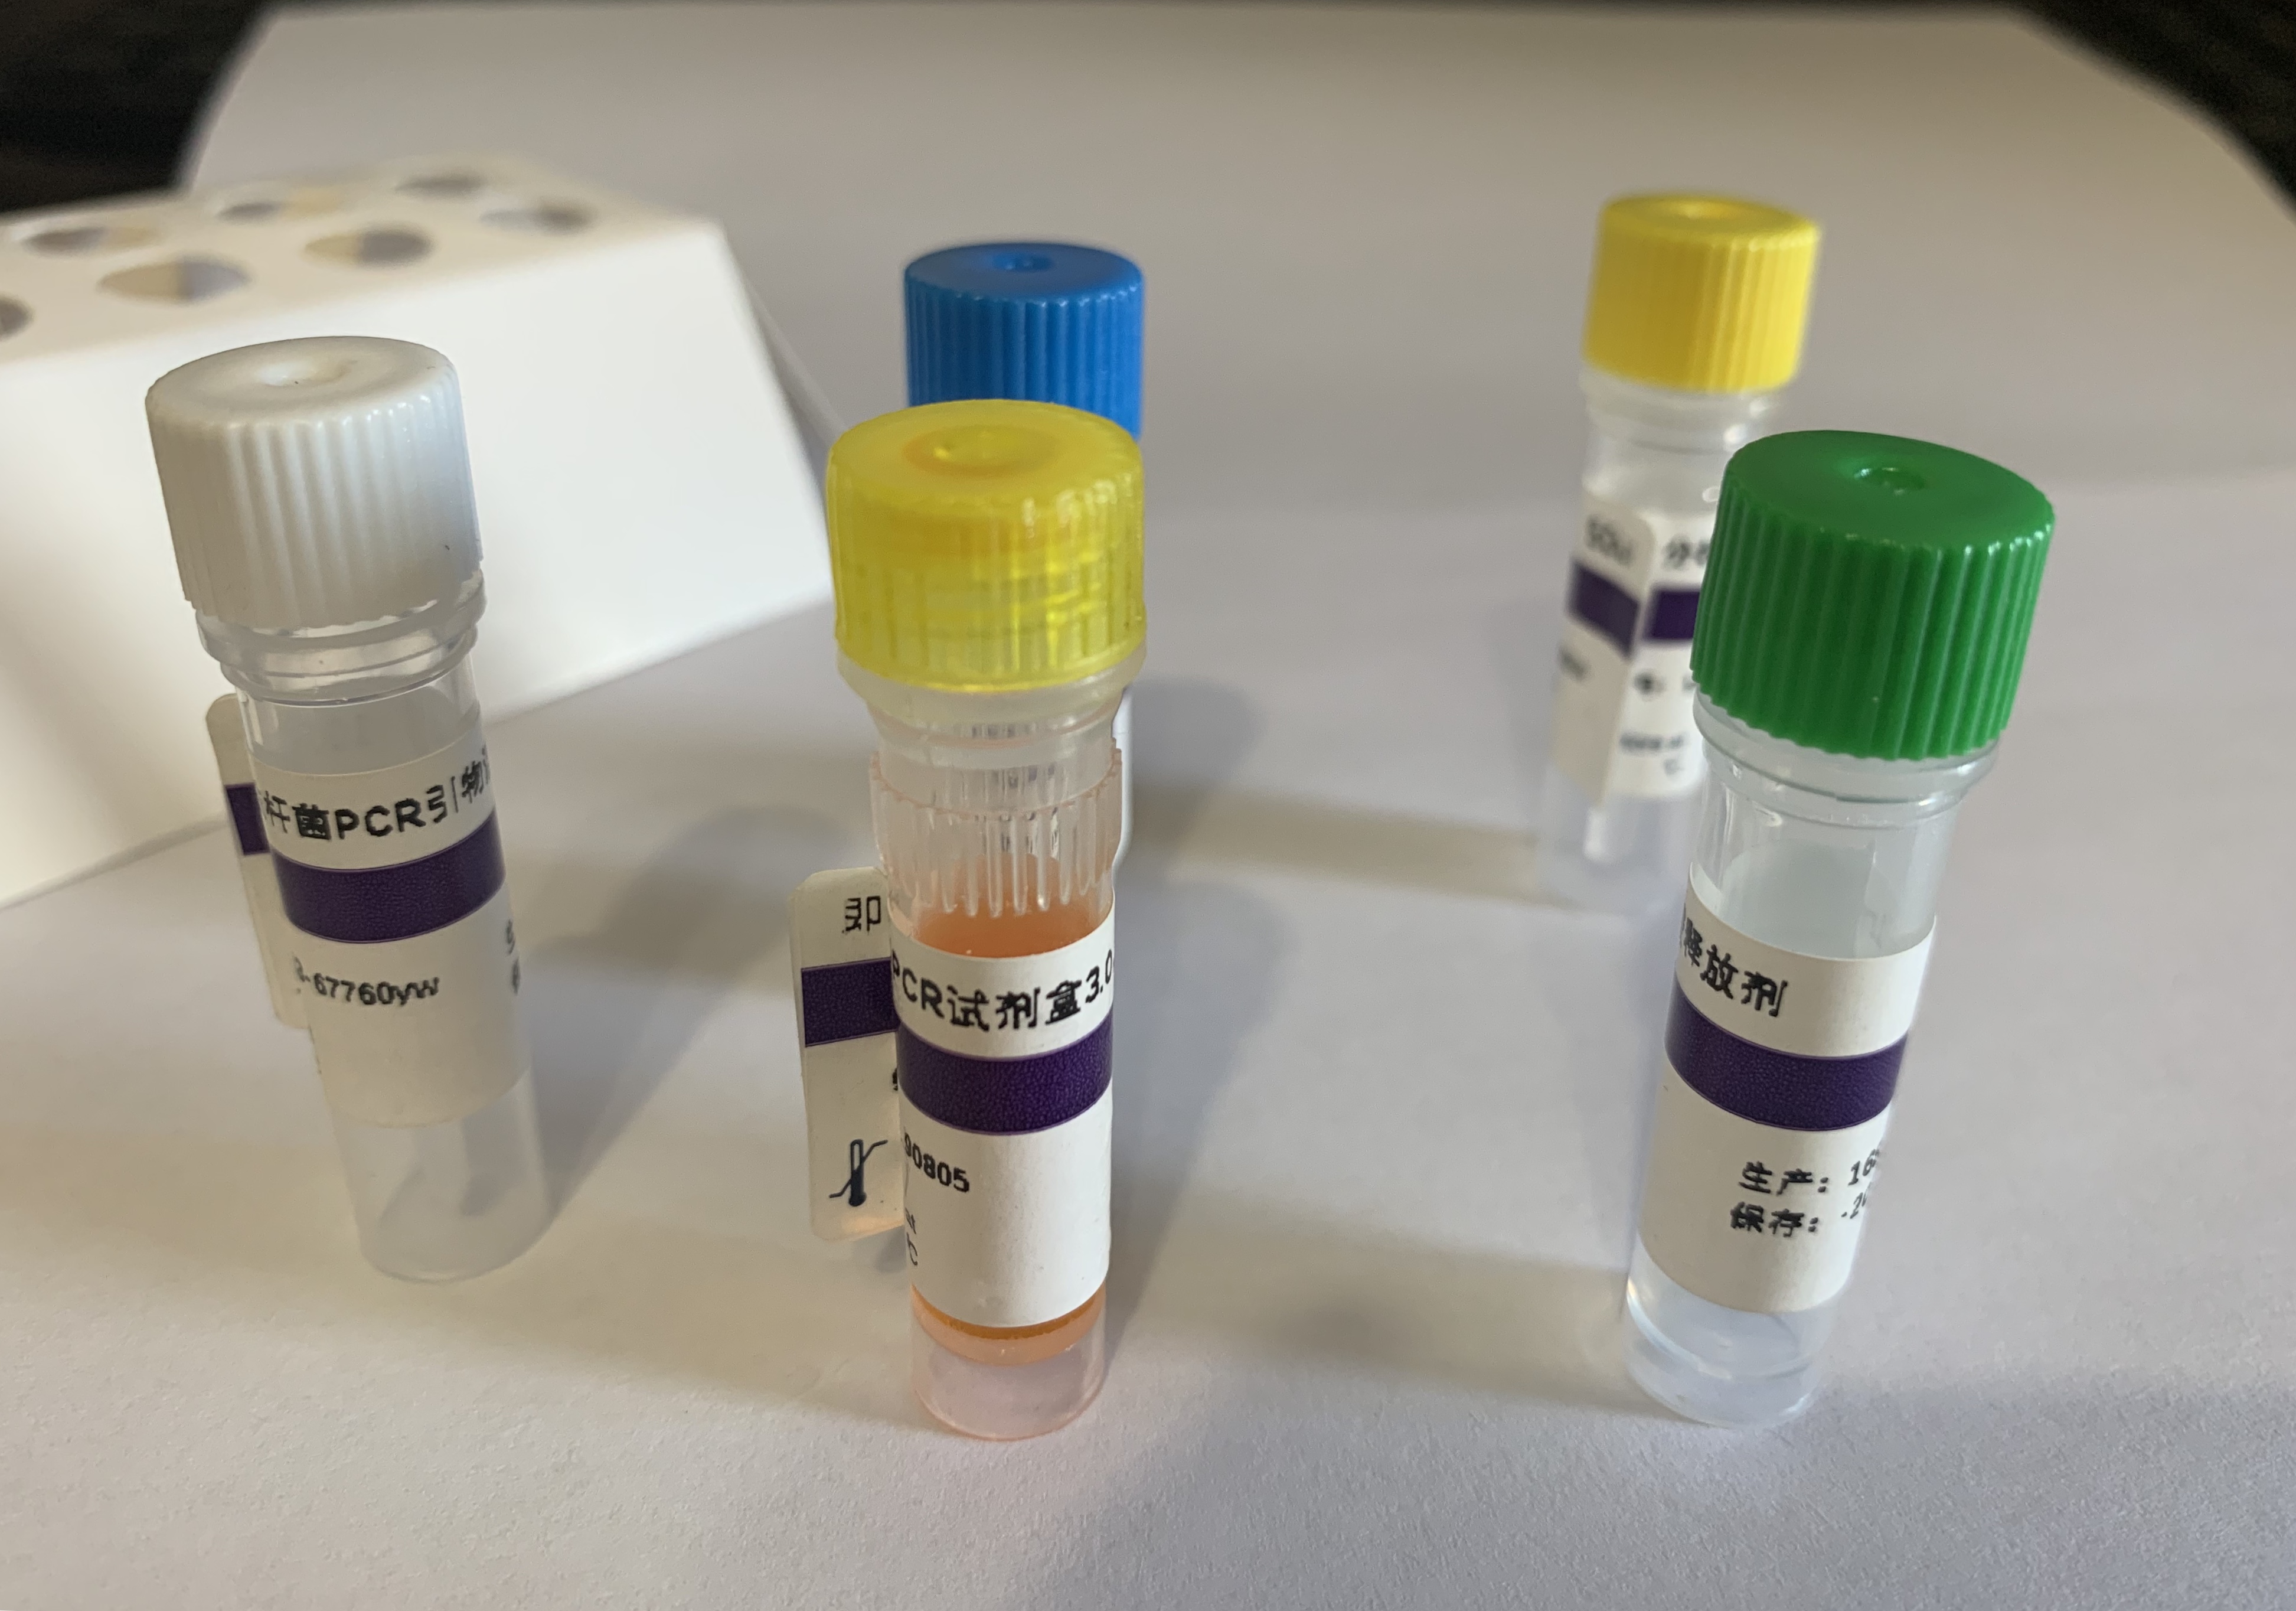 犬细小病毒PCR试剂盒